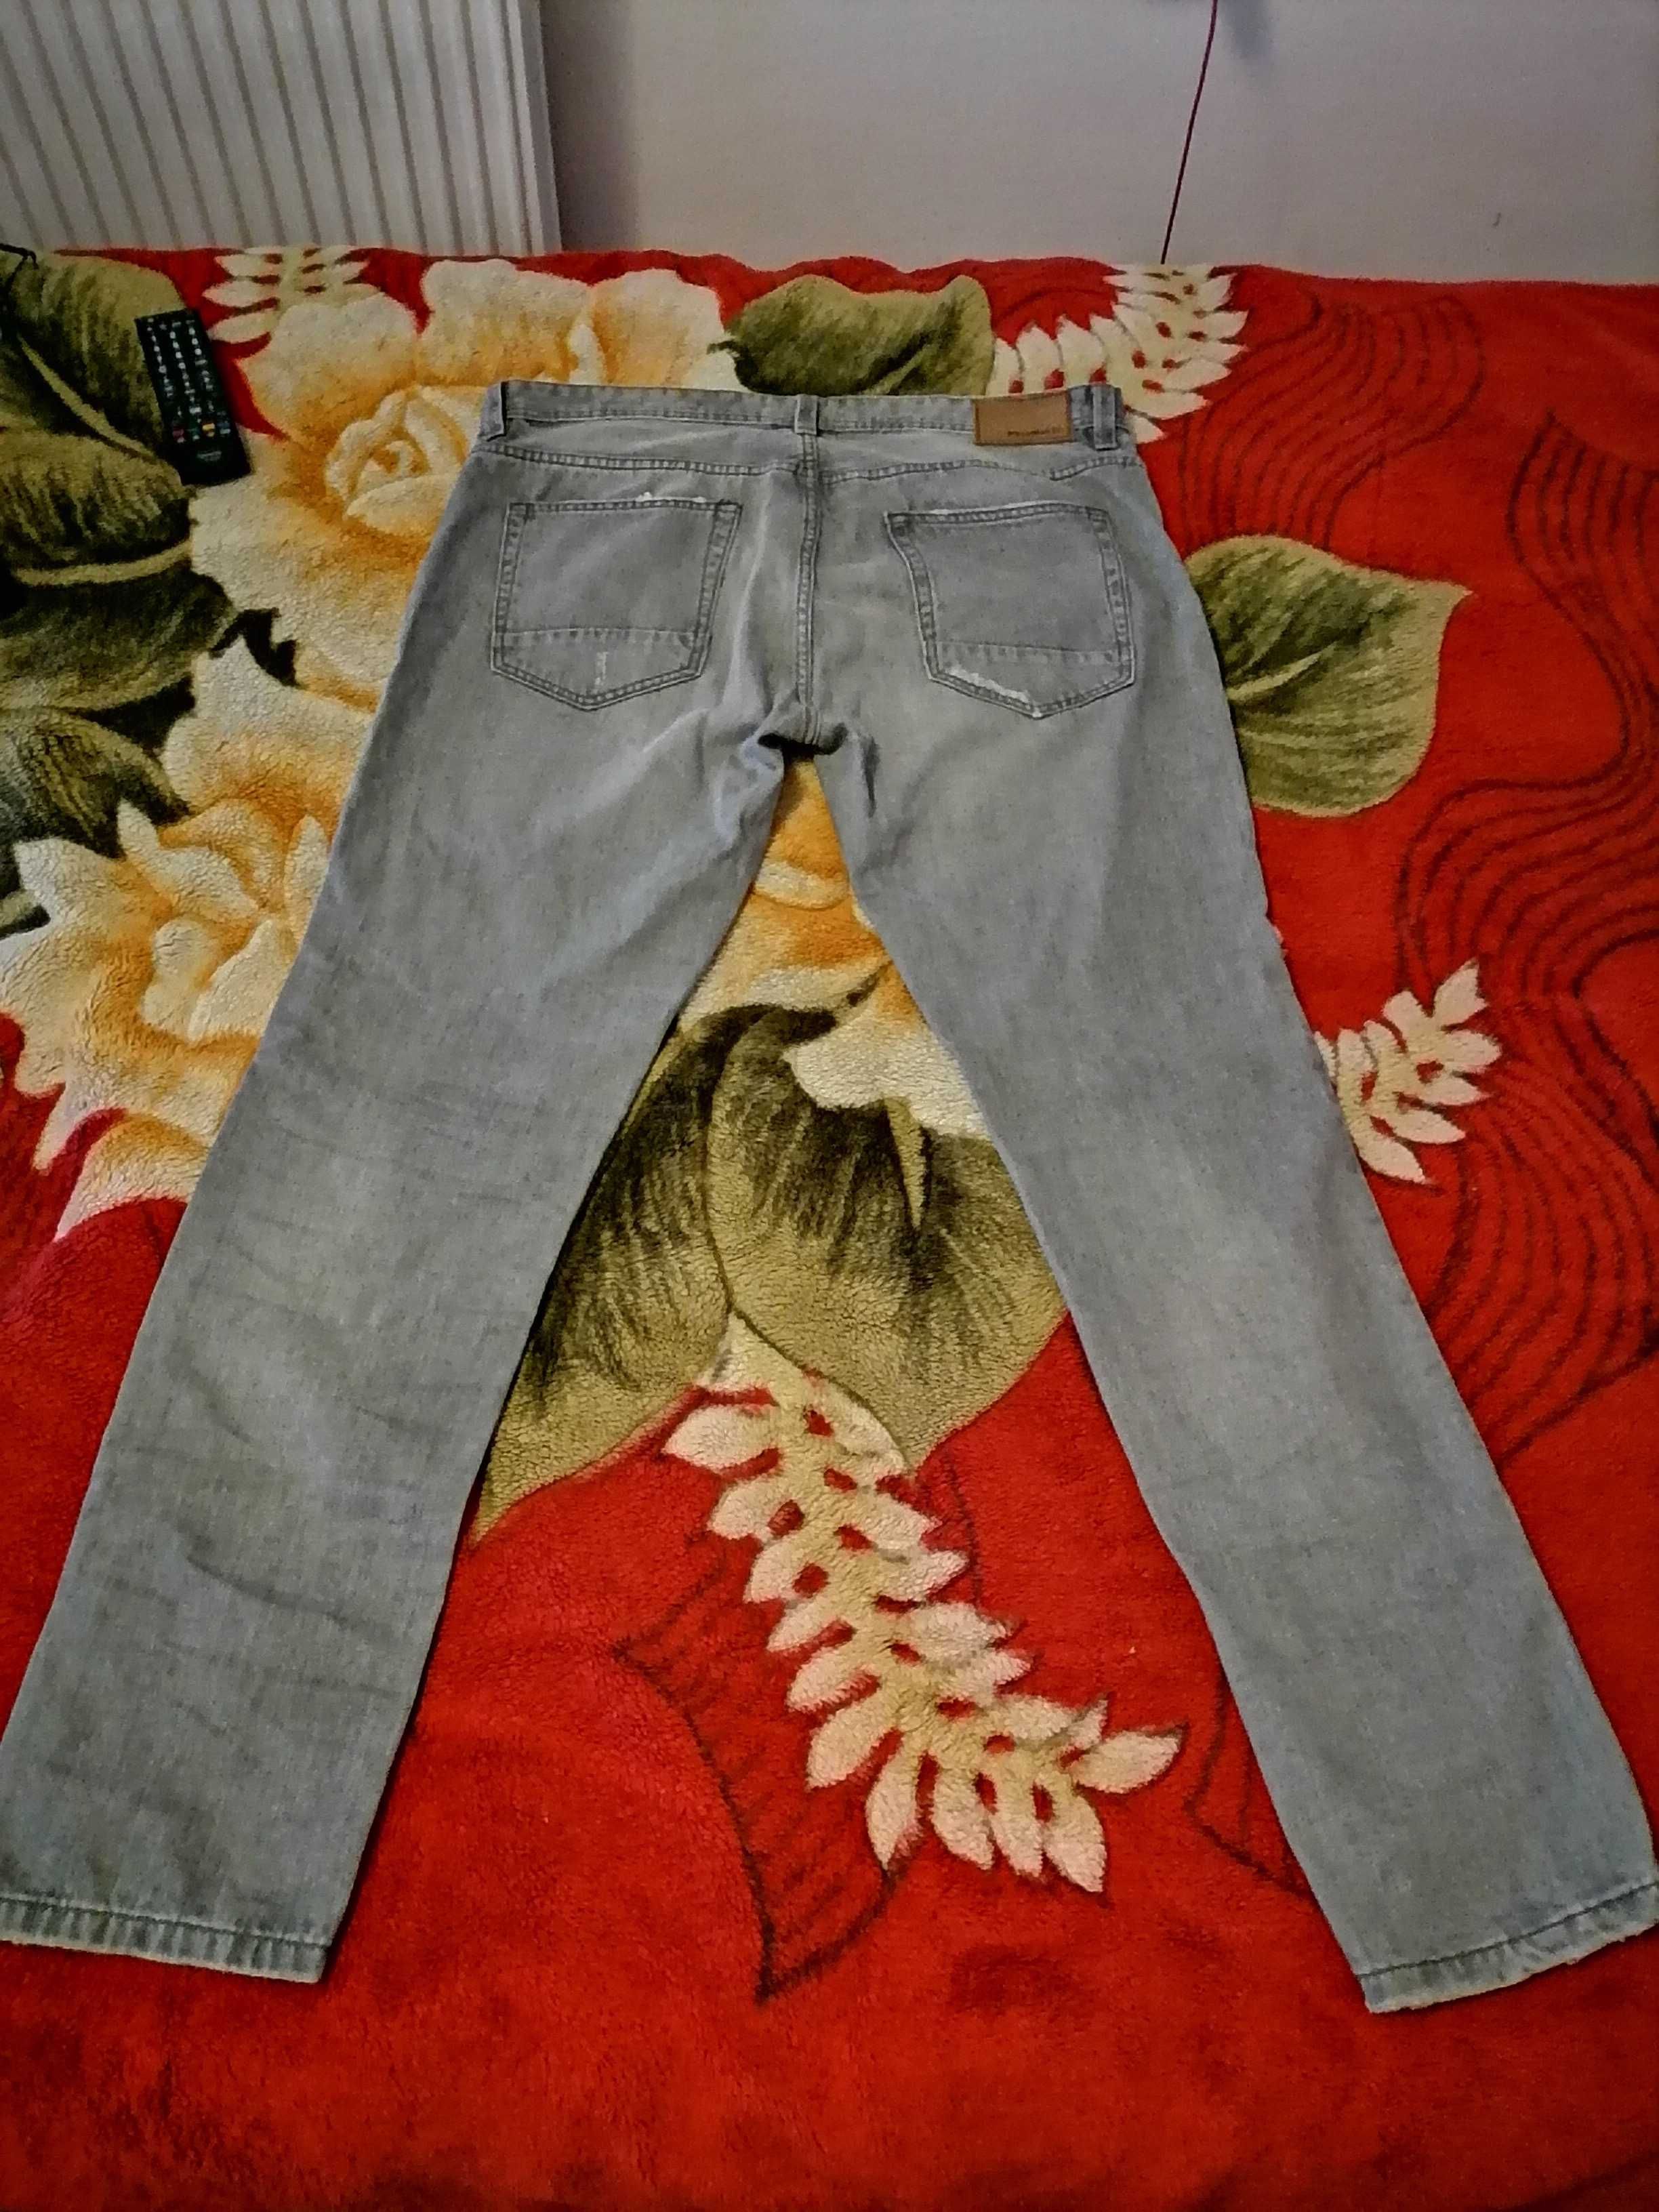 Pull & Bear Slim Fit Blugi Distressed Jeans masura 48/38 culoare gri